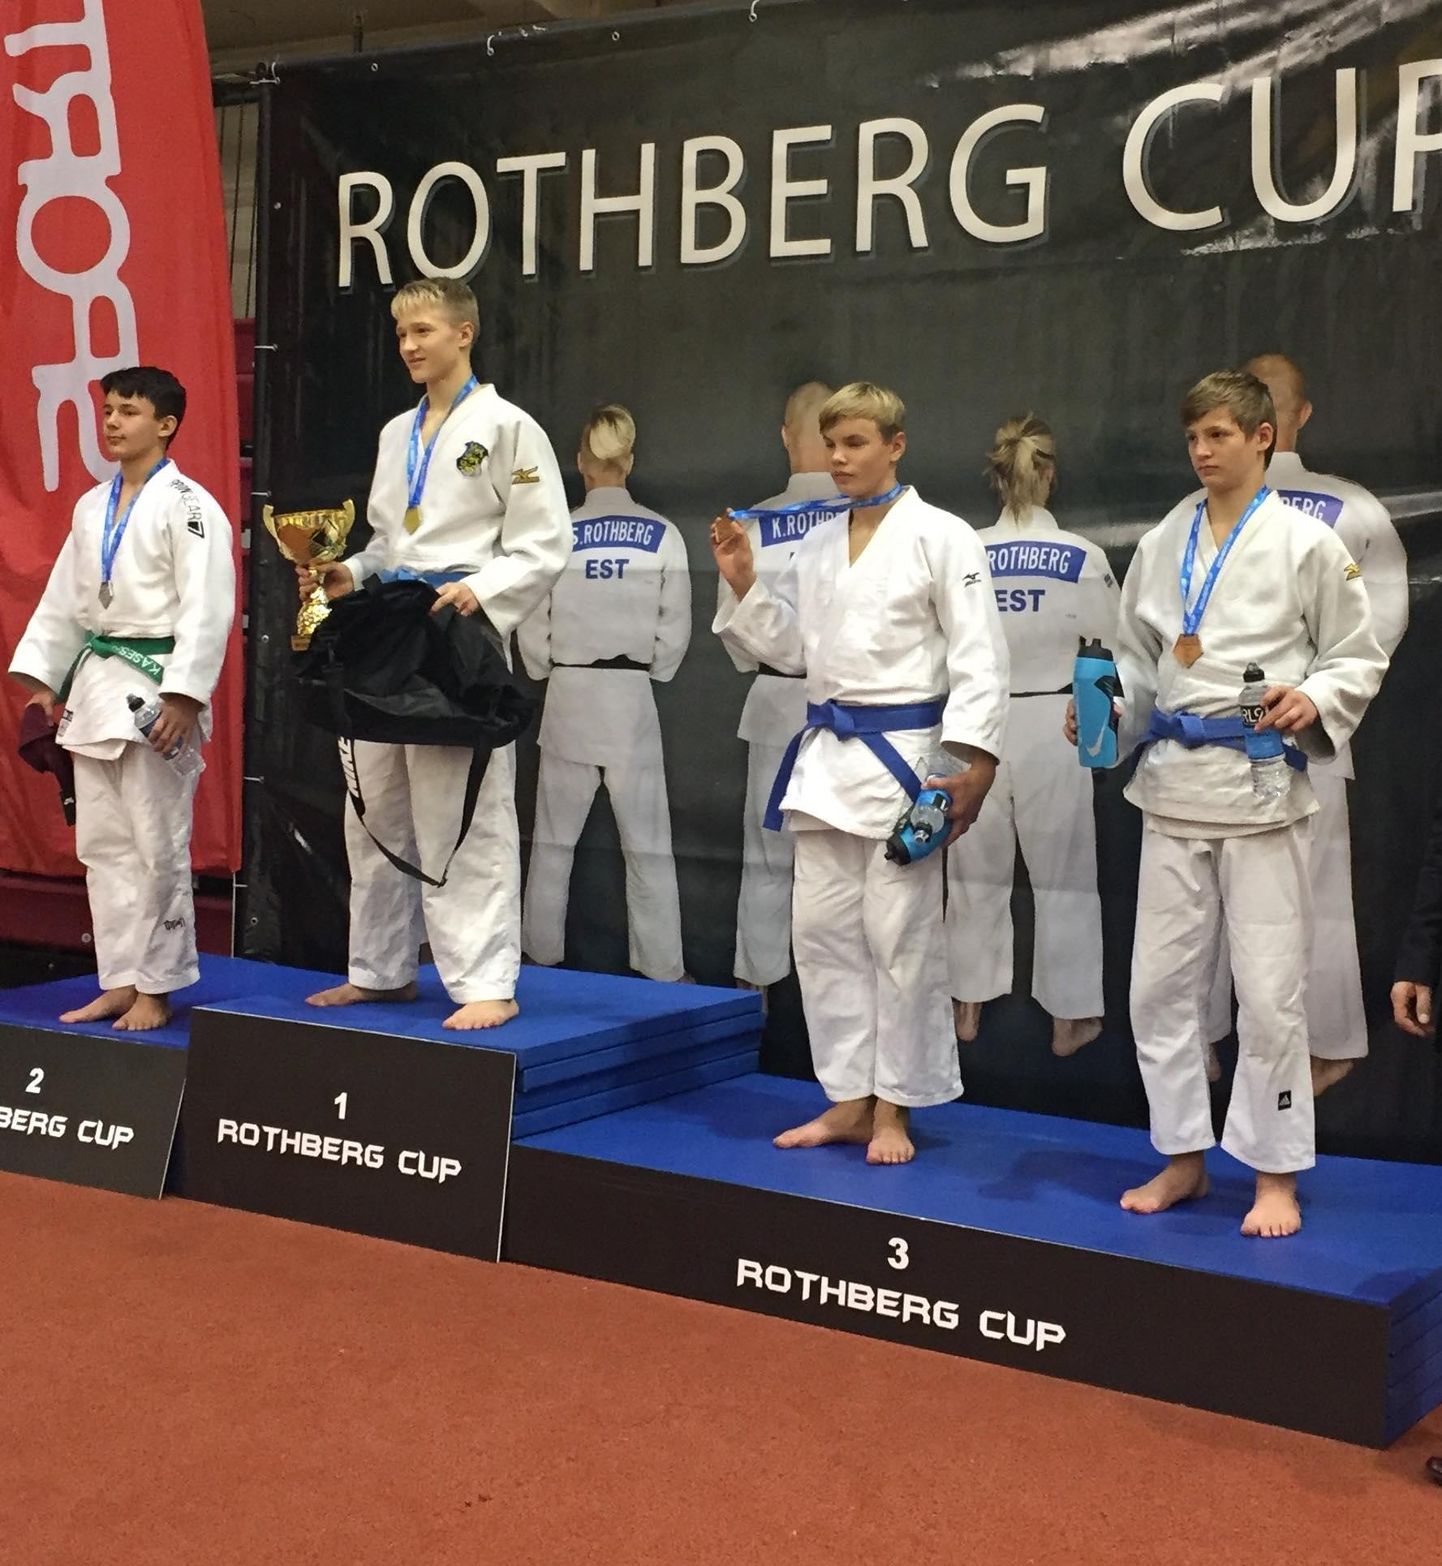 Christian Marcus Kasesalu (vasakul) tõusis judoturniiril Rothberg Cup pjedestaali teisele astmele.